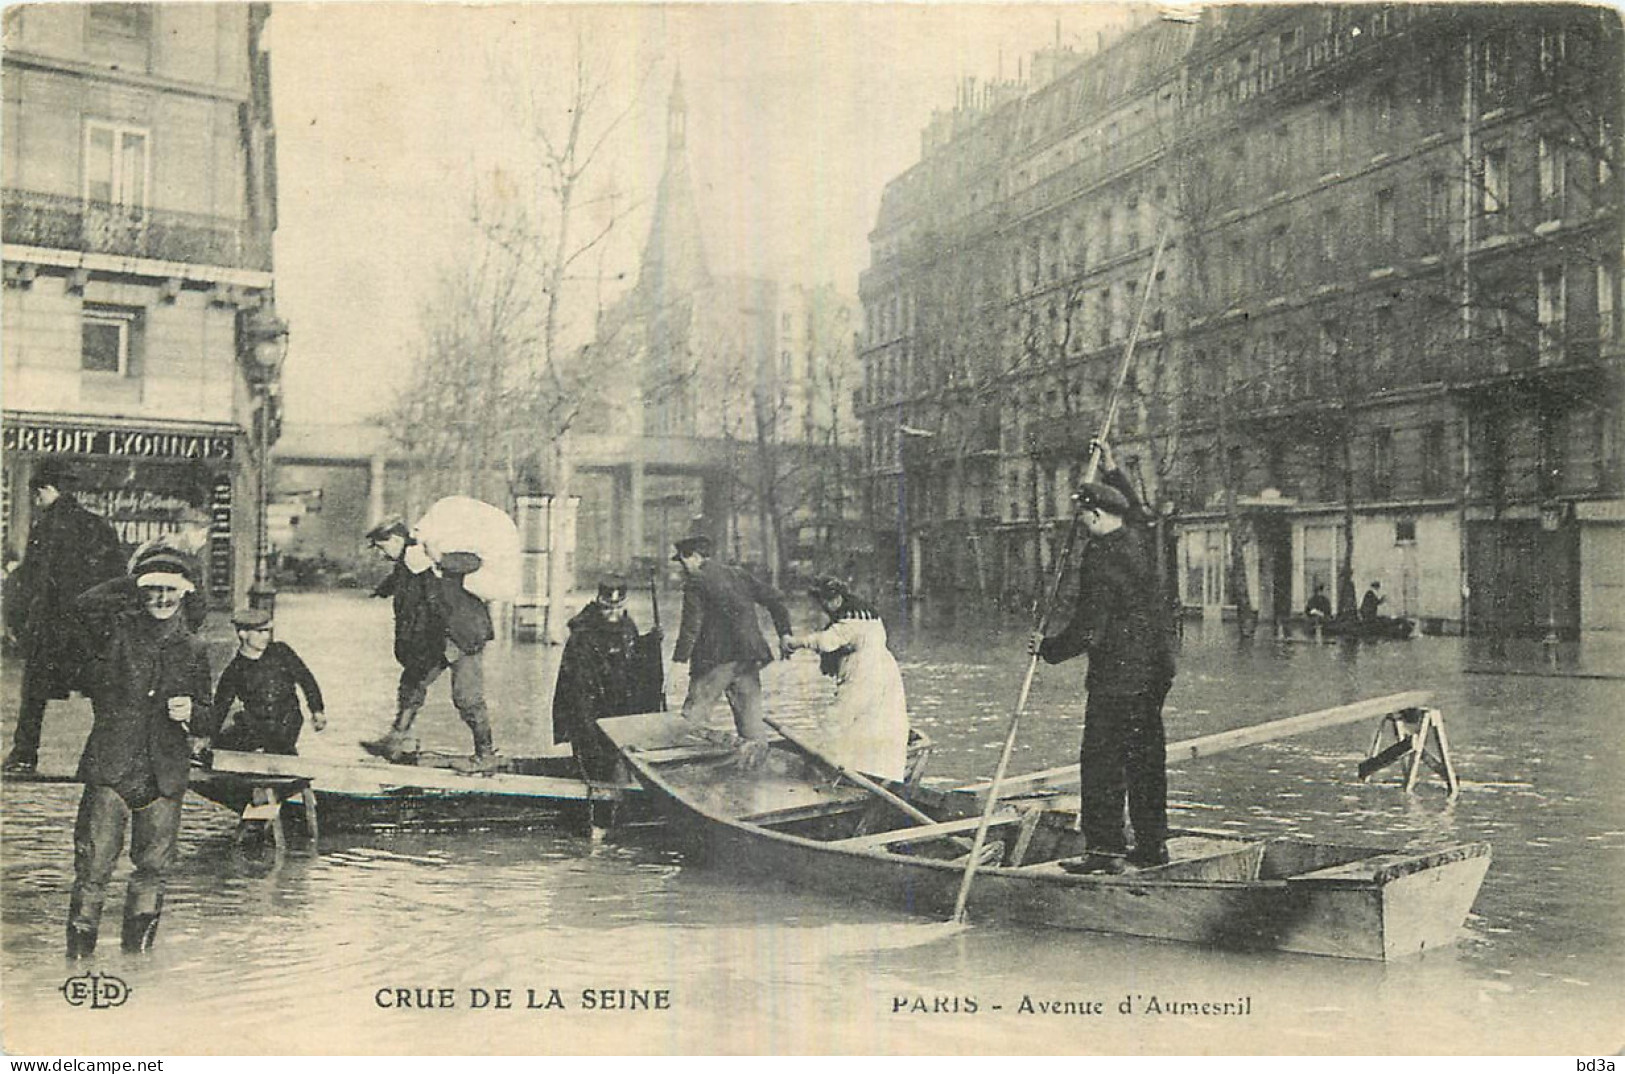 75 - PARIS - CRUE DE LA SEINE - AVENUE D'AUMESNIL - Paris Flood, 1910